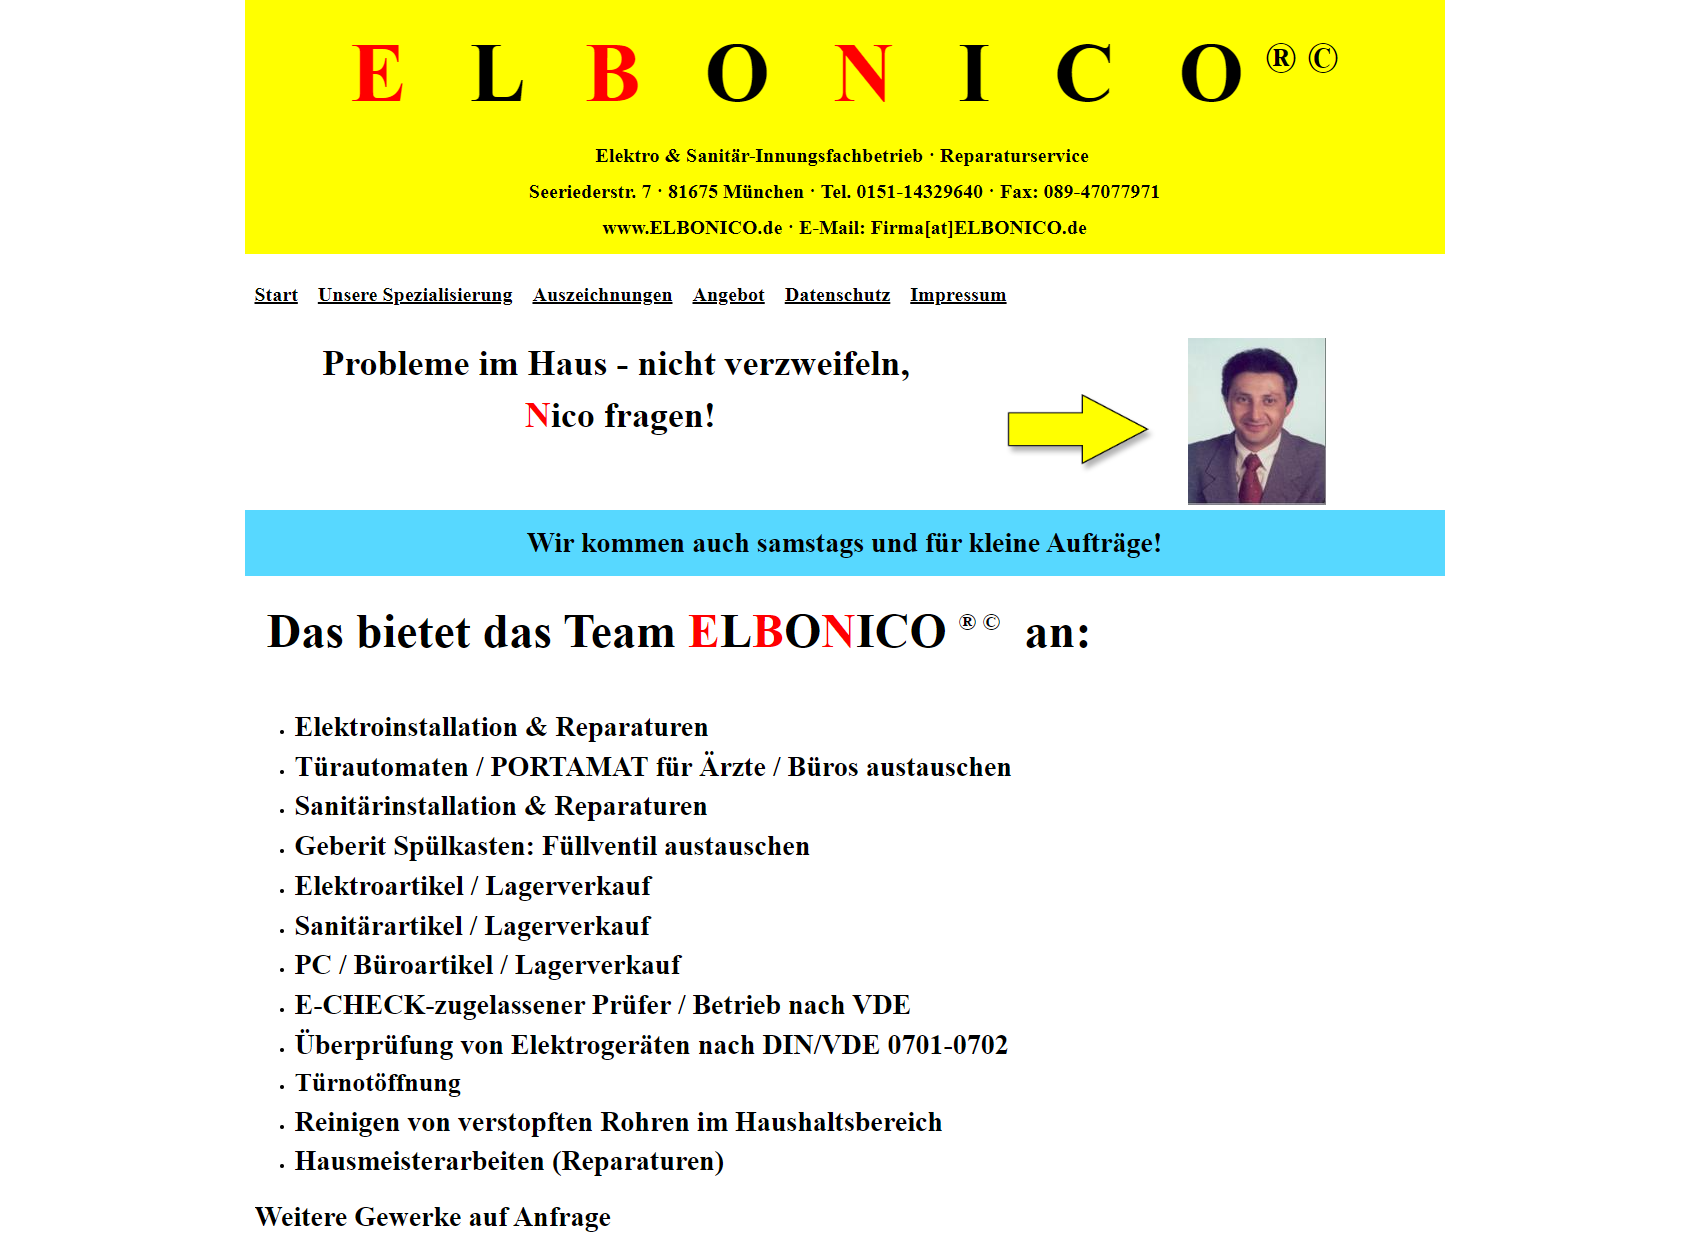 ELBONICO ® © - ELEKTRO & SANITÄR - REPARATURSERVICE